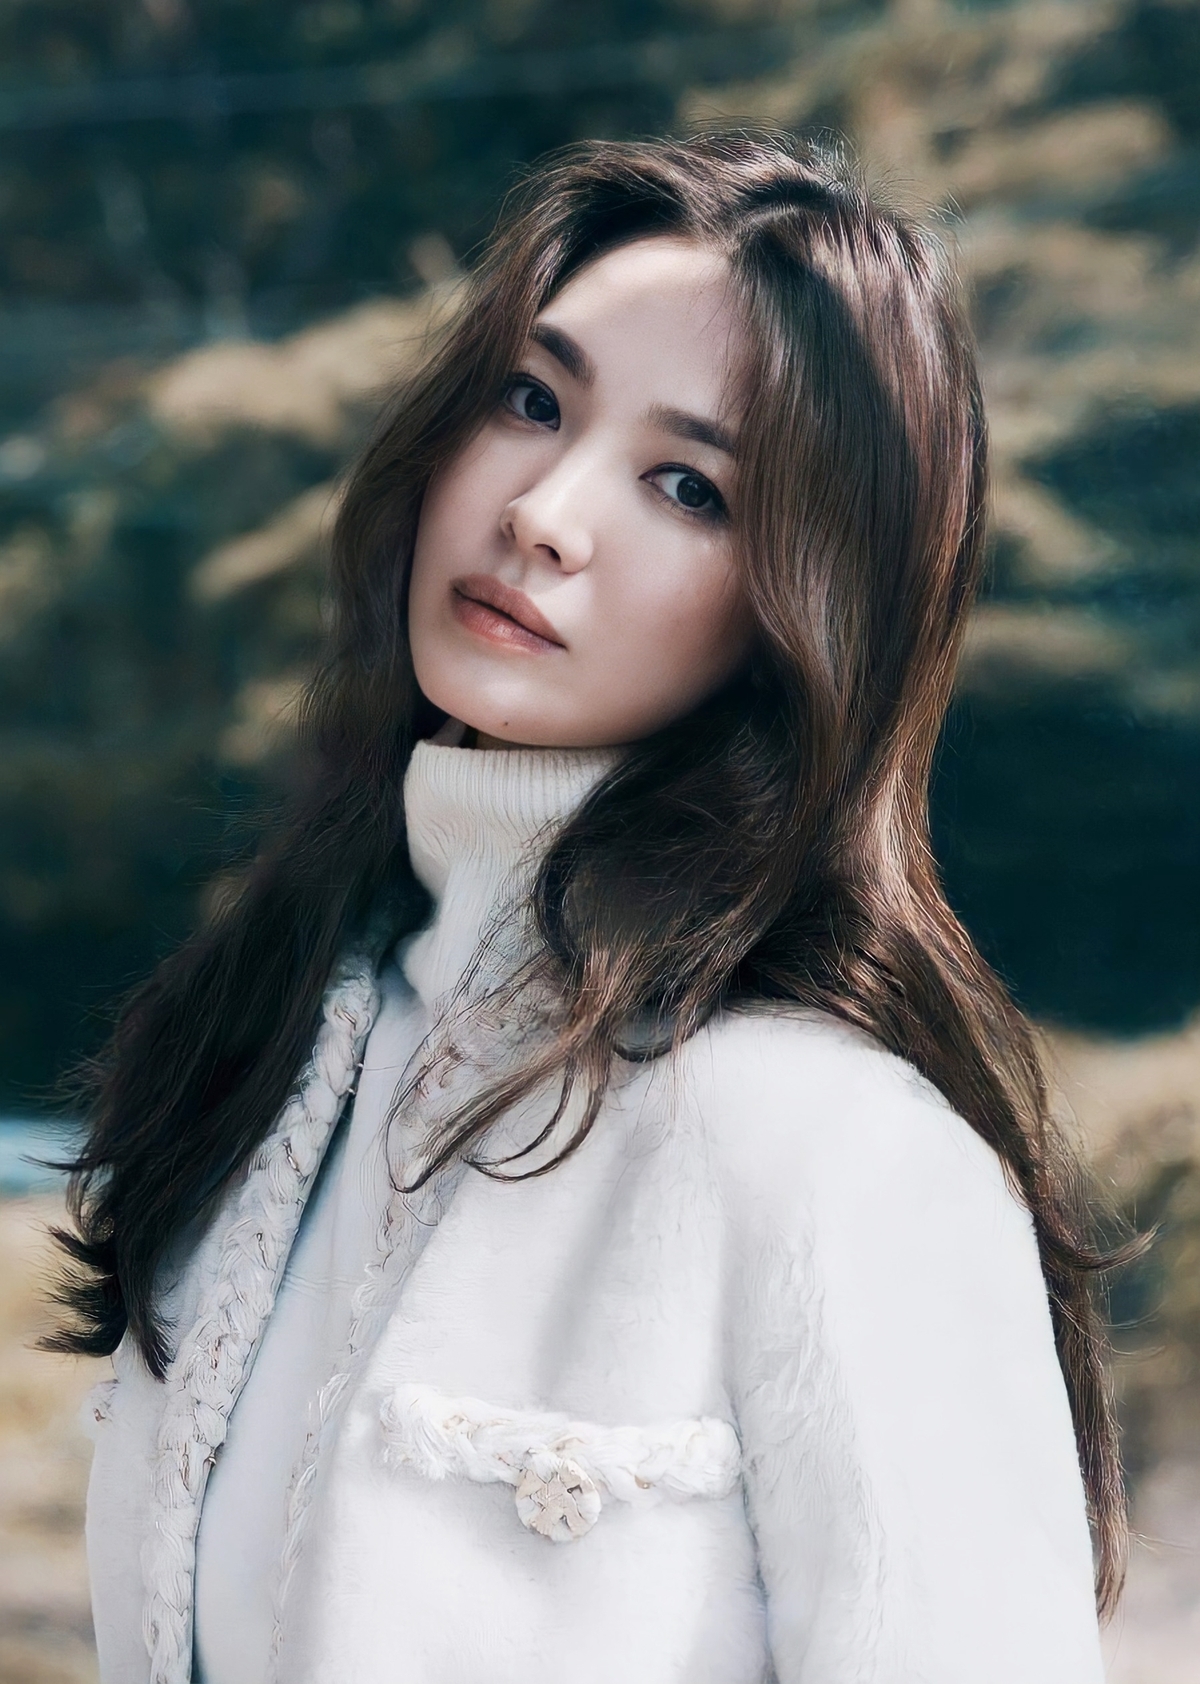 Năm 2020, Song Hye Kyo đứng thứ 17 trong bảng xếp hạng nhan sắc Kingchoice.